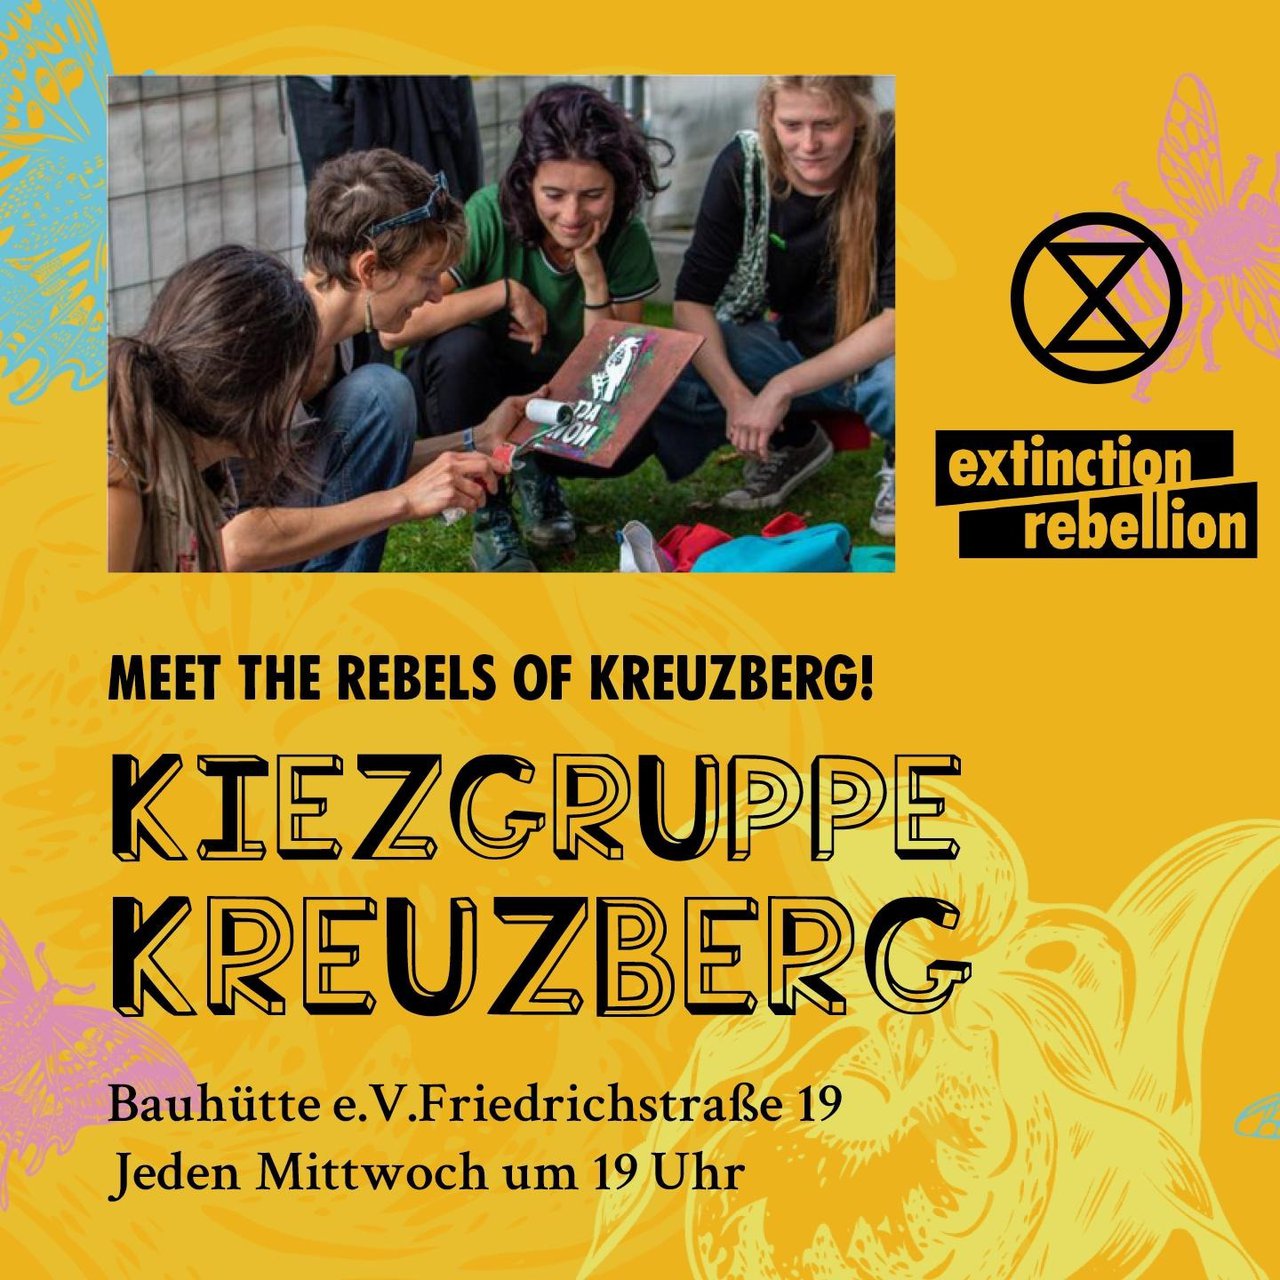 Lerne die Rebellionsgruppe Kreuzberg kennen!